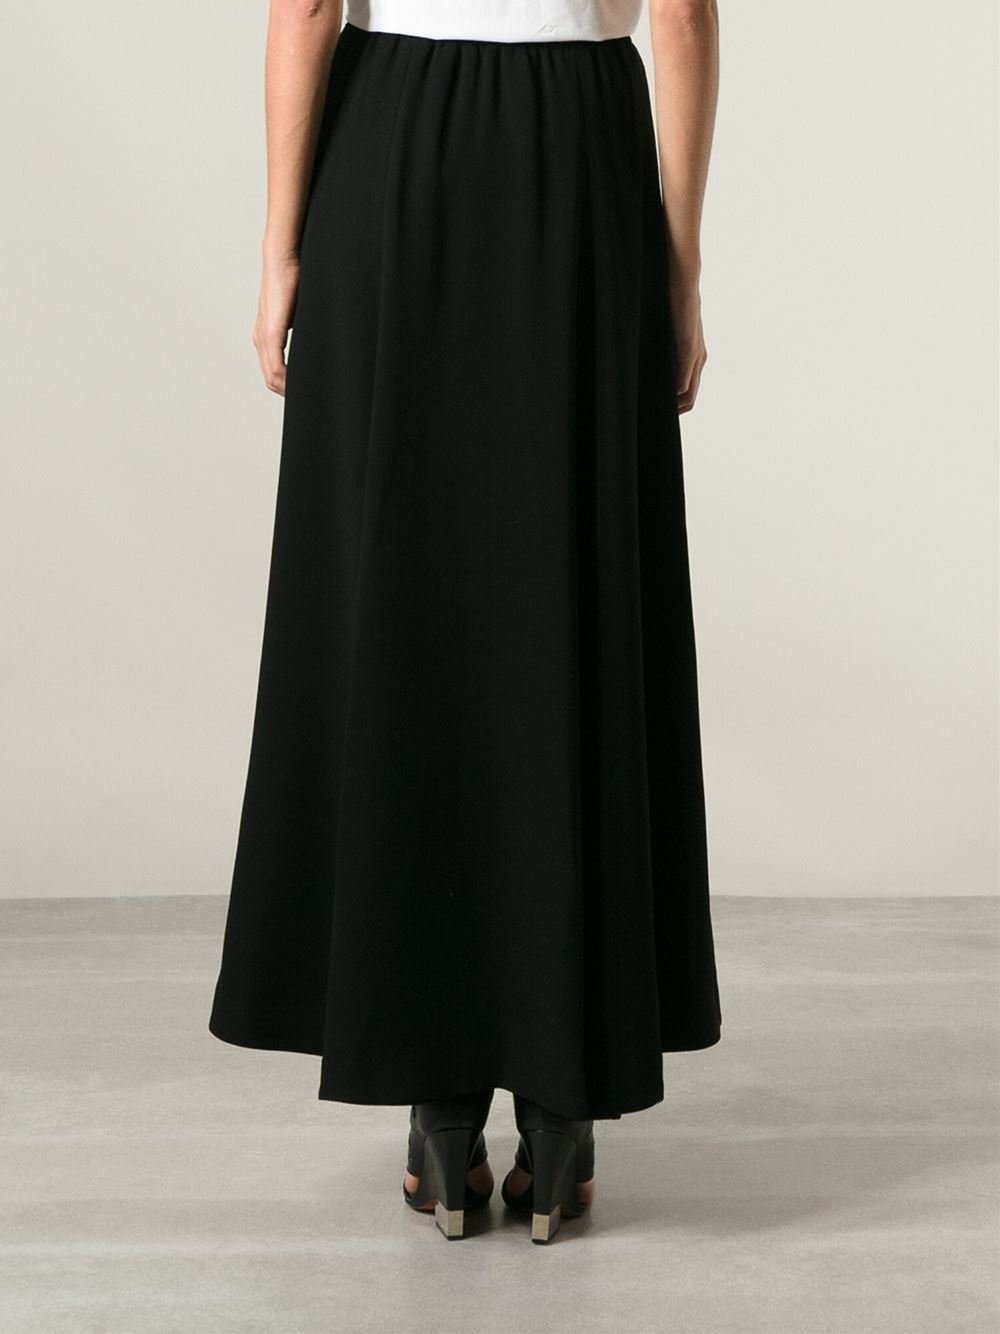 Black Long A Line Skirt | Jill Dress